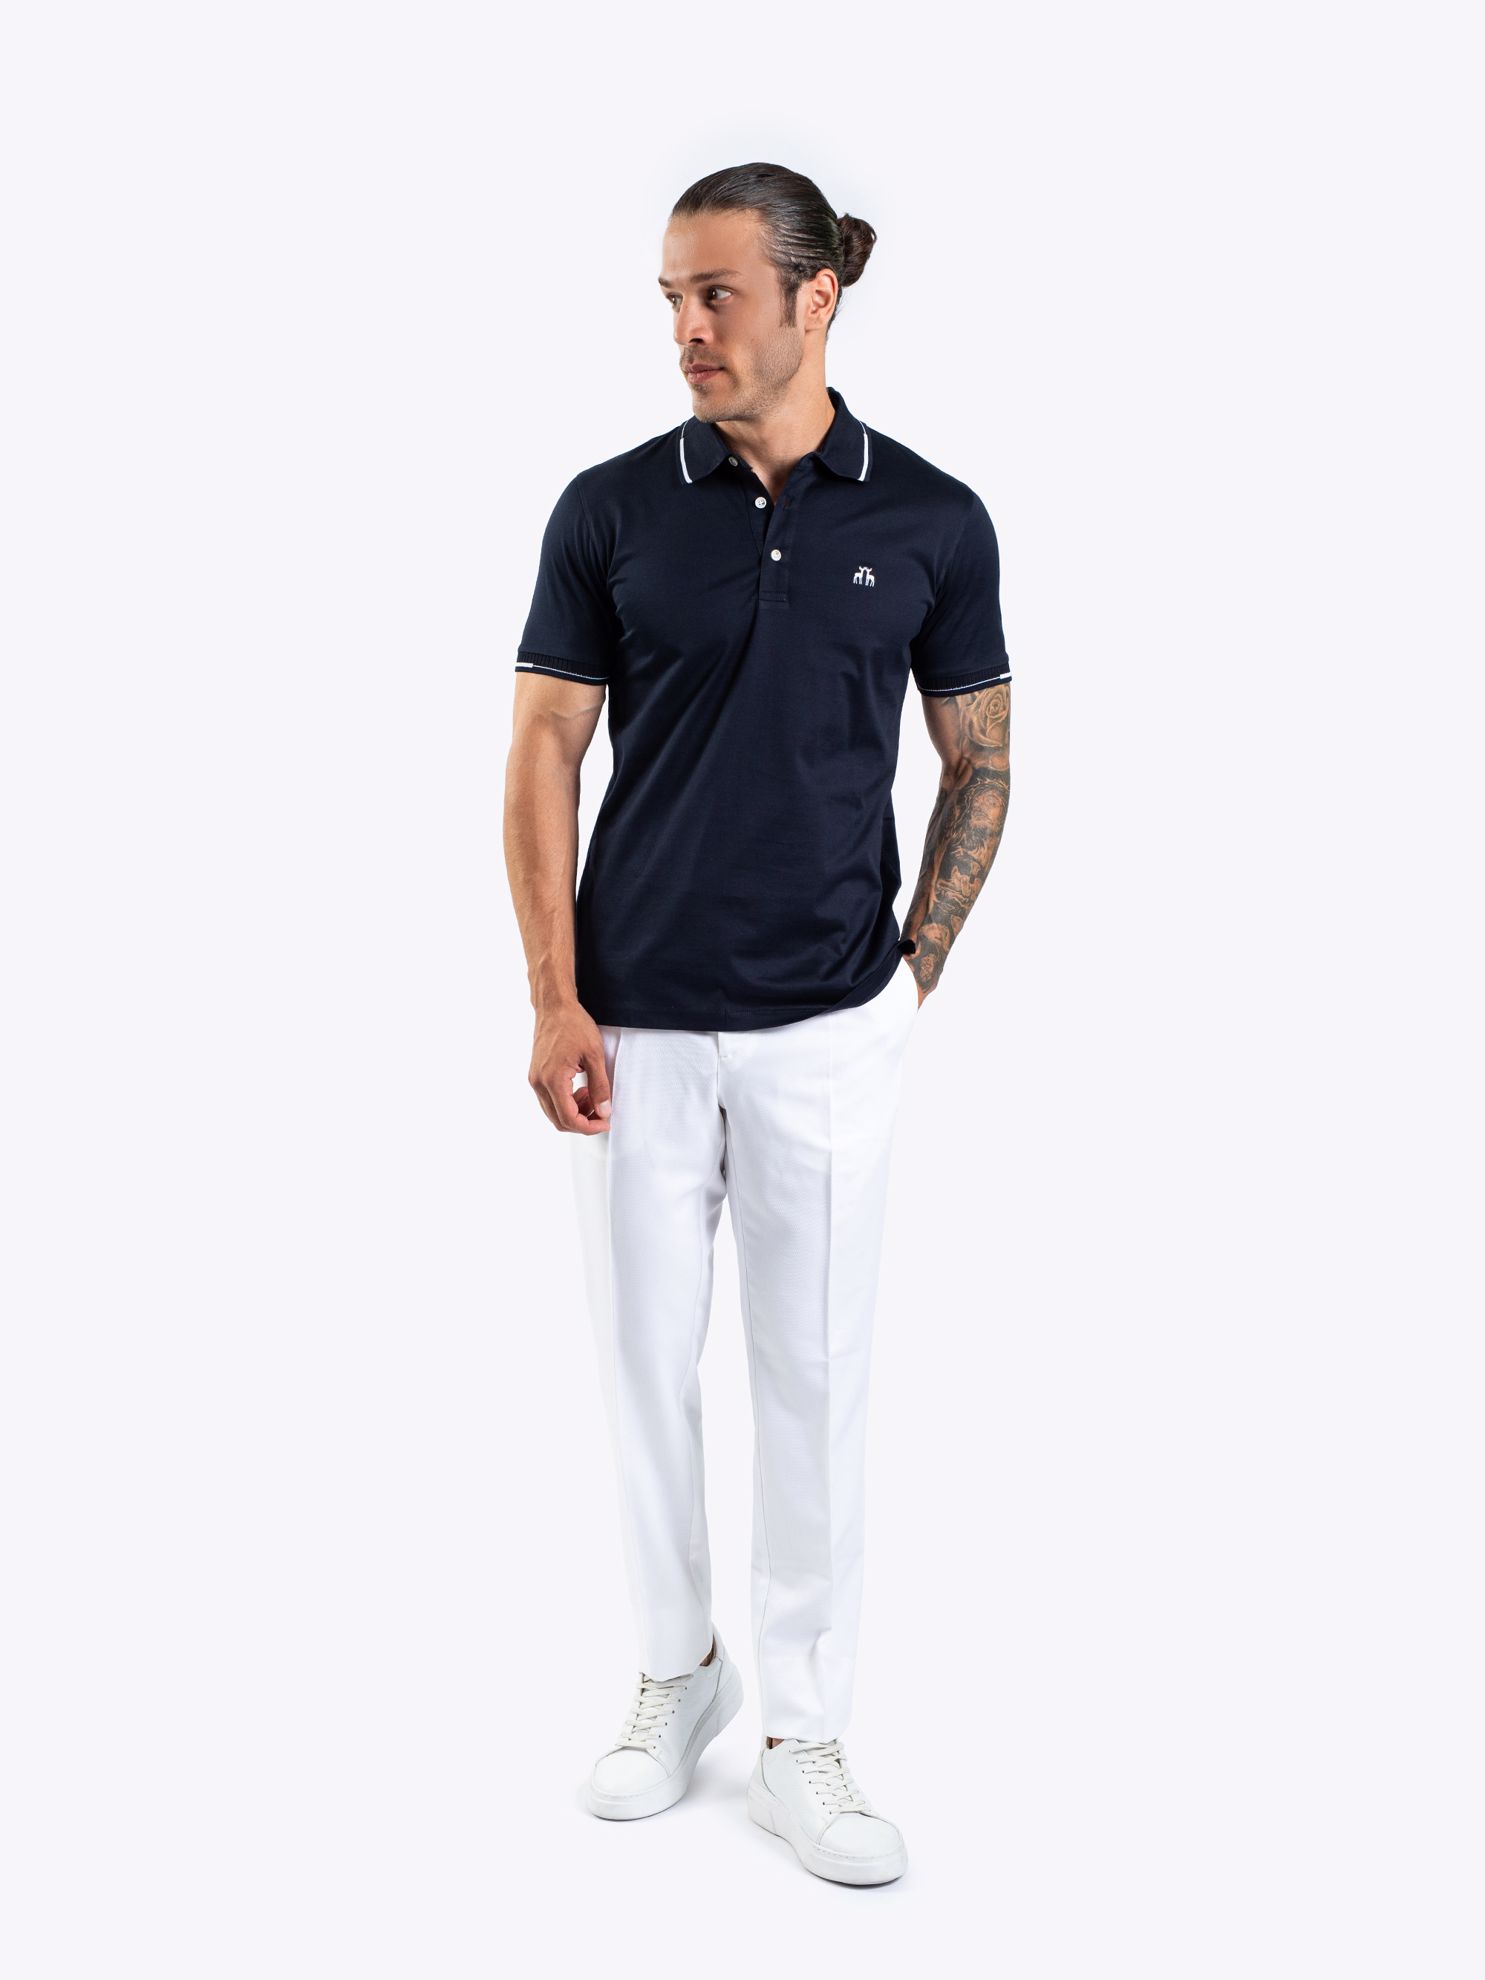 Karaca Erkek Slim Fit Polo Yaka Tişört-Lacivert. ürün görseli